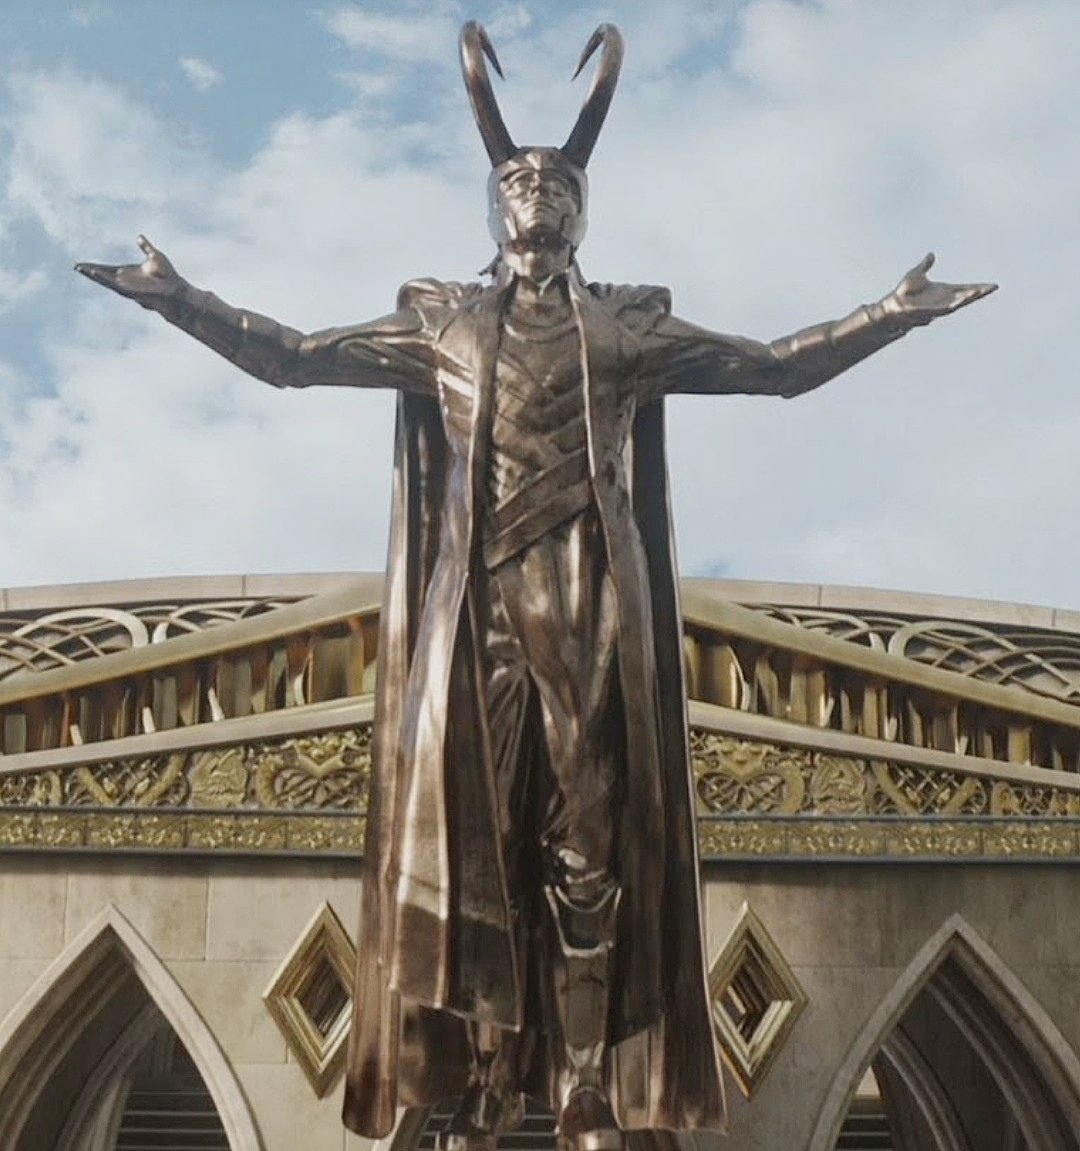 Now he deserves that statue with the inscription:
                                    'Loki Who Remains' 
#Loki  #LokiSeason2 #GloriousPurpose #ThorRagnarok